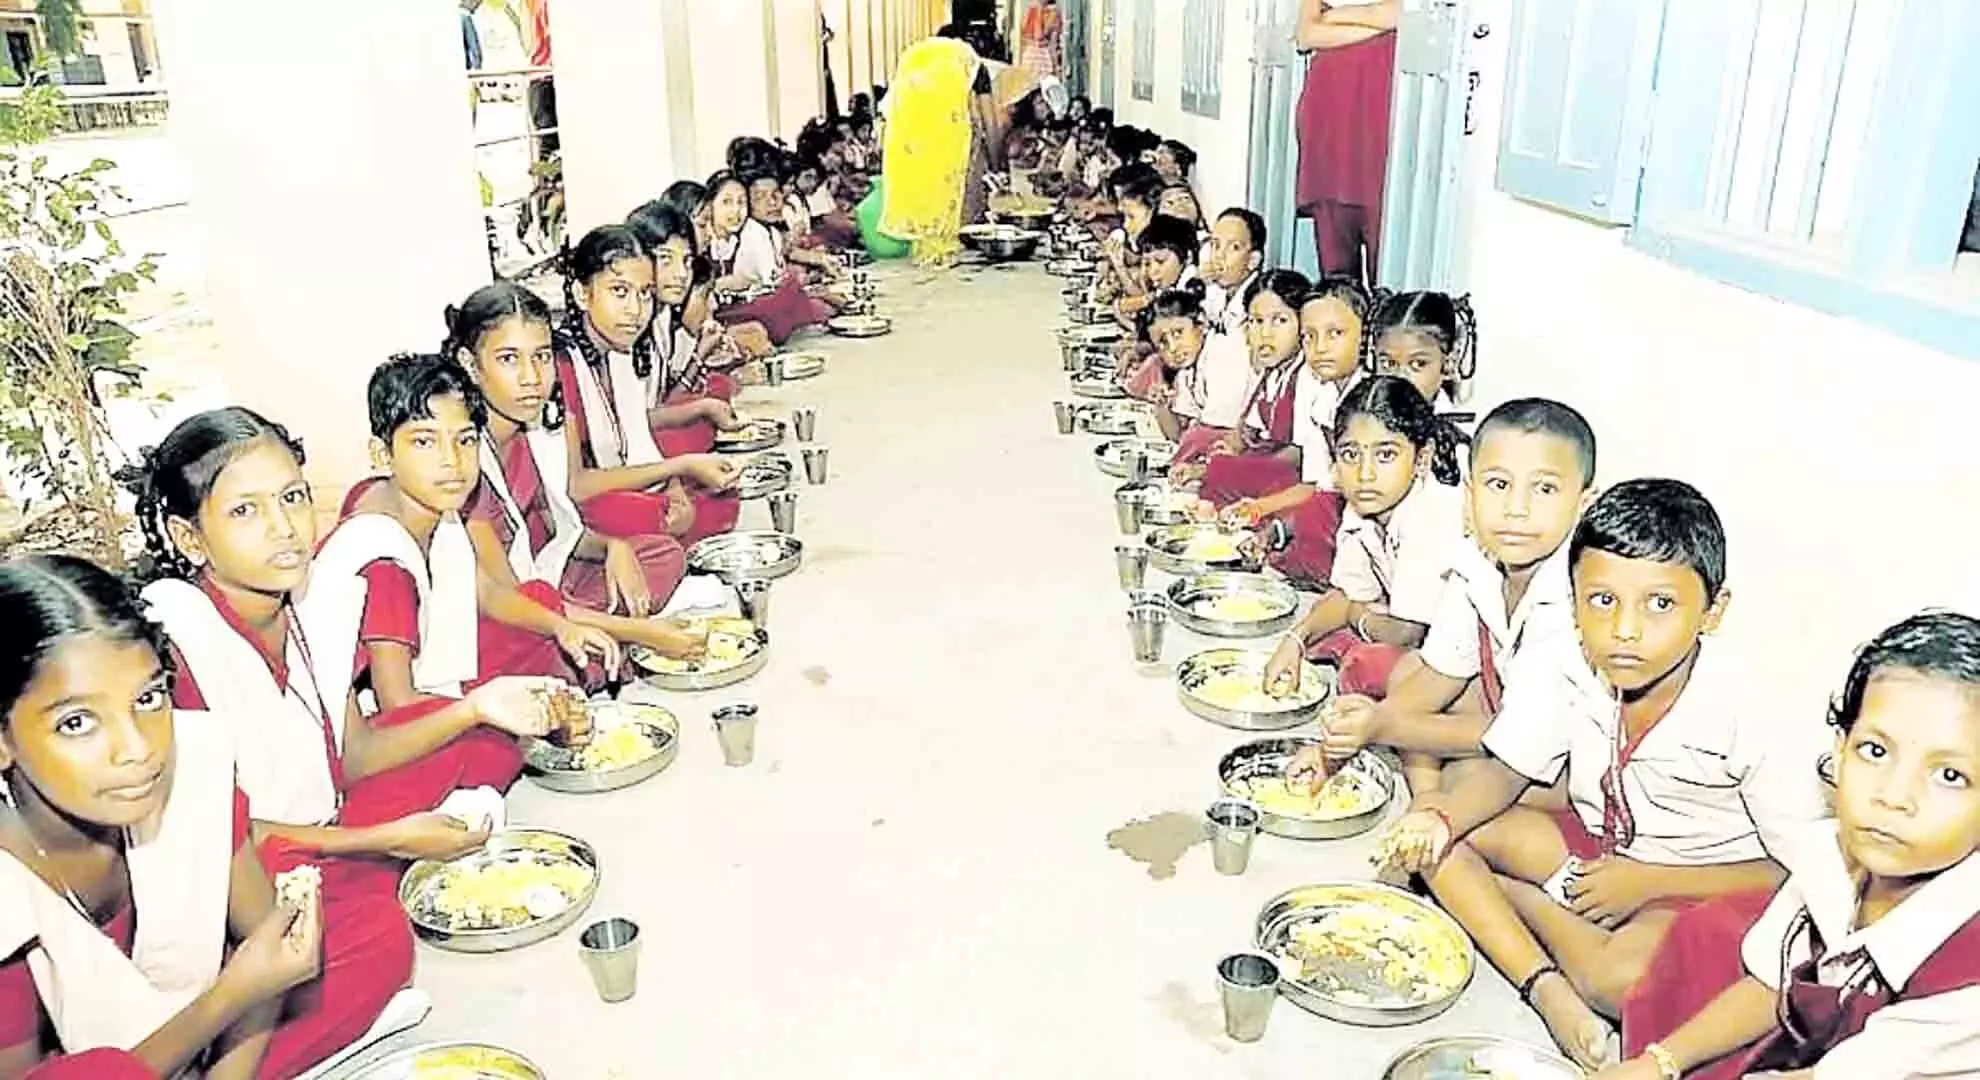 तमिलनाडु: एसपीसी सर्वेक्षण के अनुसार, नाश्ता योजना के बाद बच्चे स्कूल जाने के लिए उत्सुक हैं